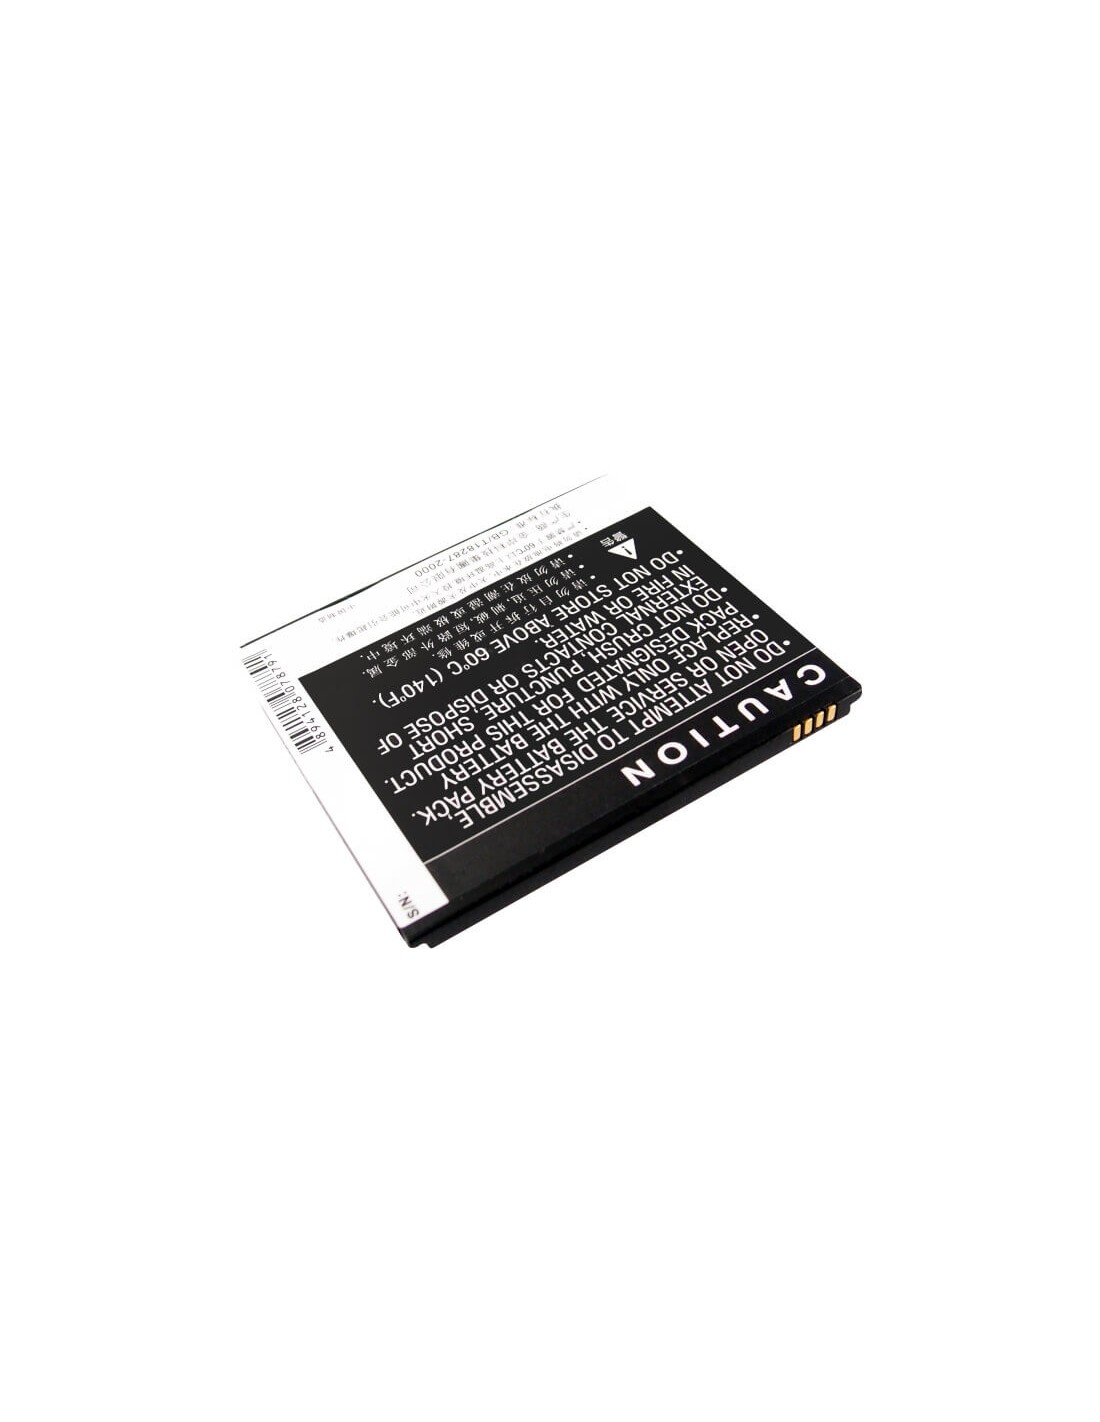 Battery for Lenovo S2005, S2005A 3.7V, 1600mAh - 5.92Wh